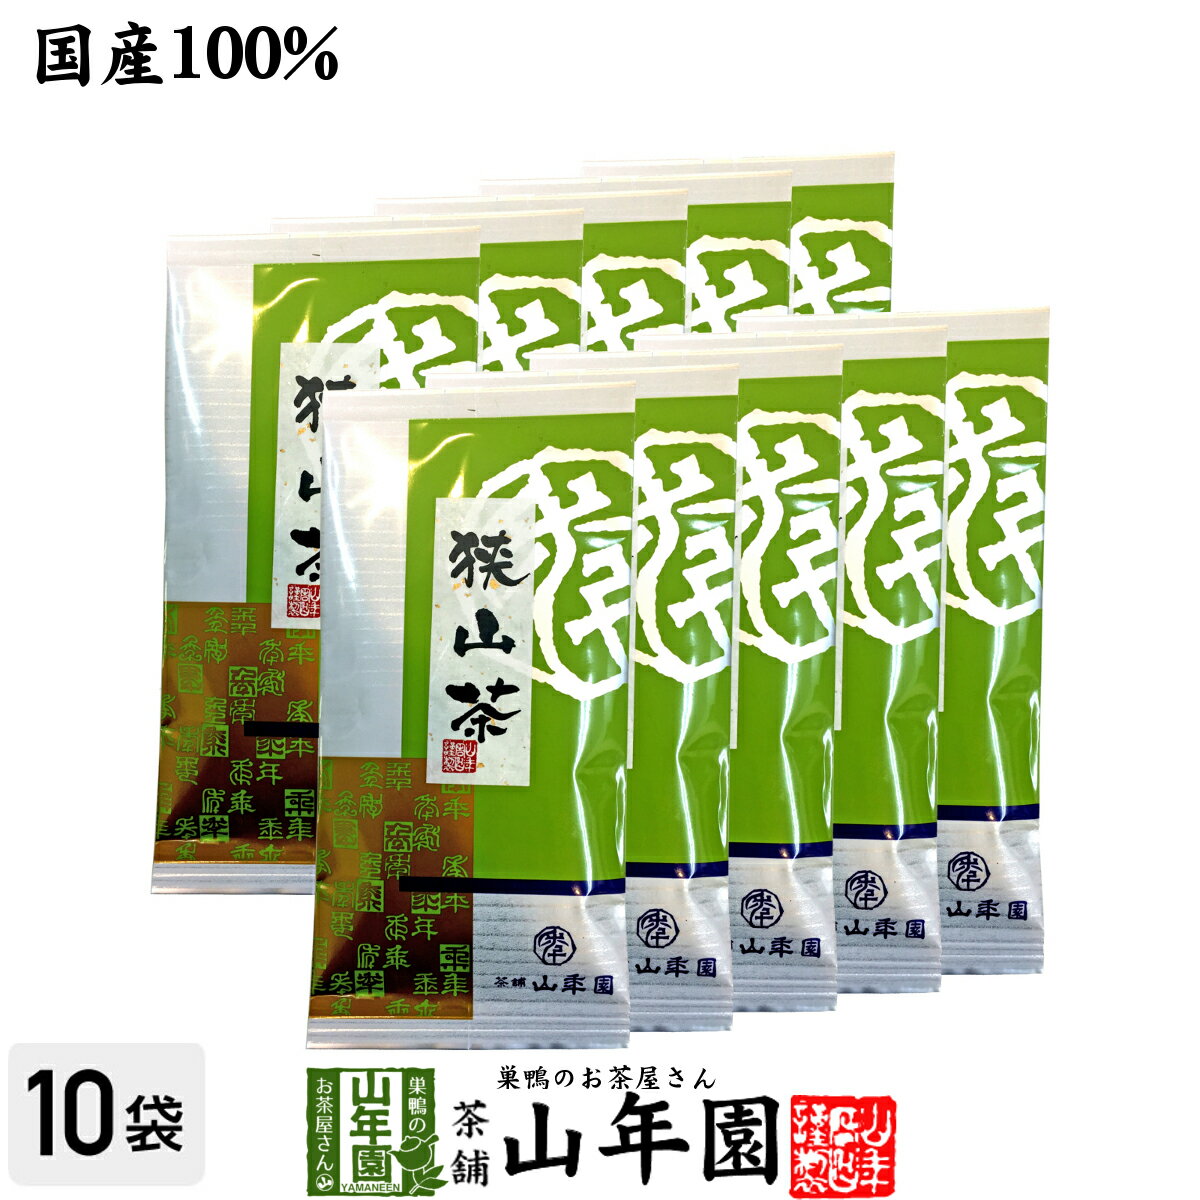 【国産】狭山茶 100g×10袋セット 送料無料 埼玉県産 